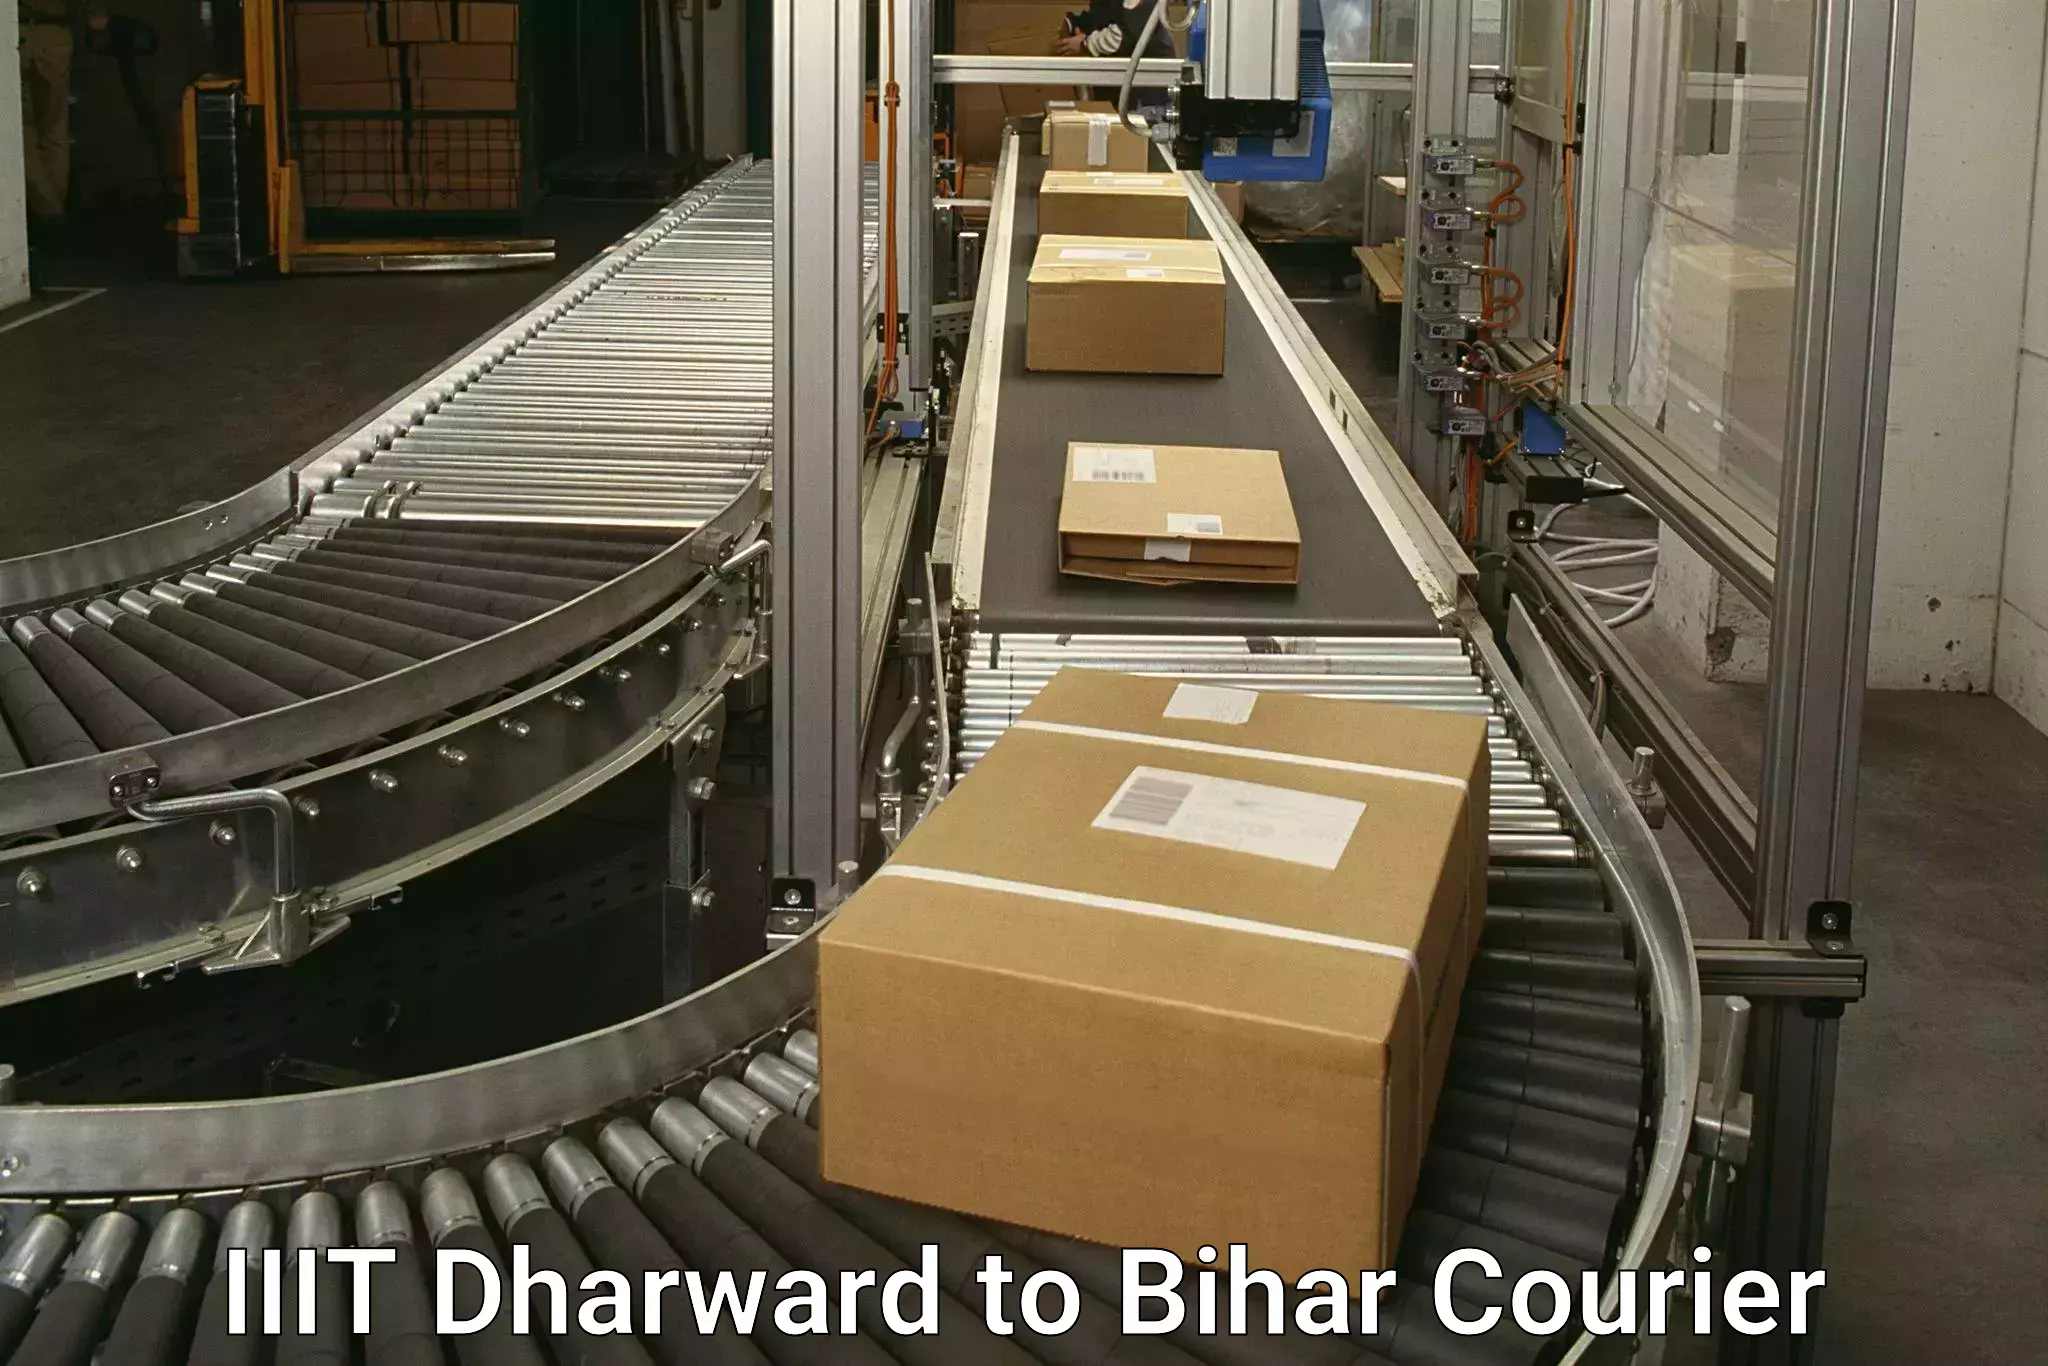 Doorstep delivery service IIIT Dharward to Bakhtiarpur